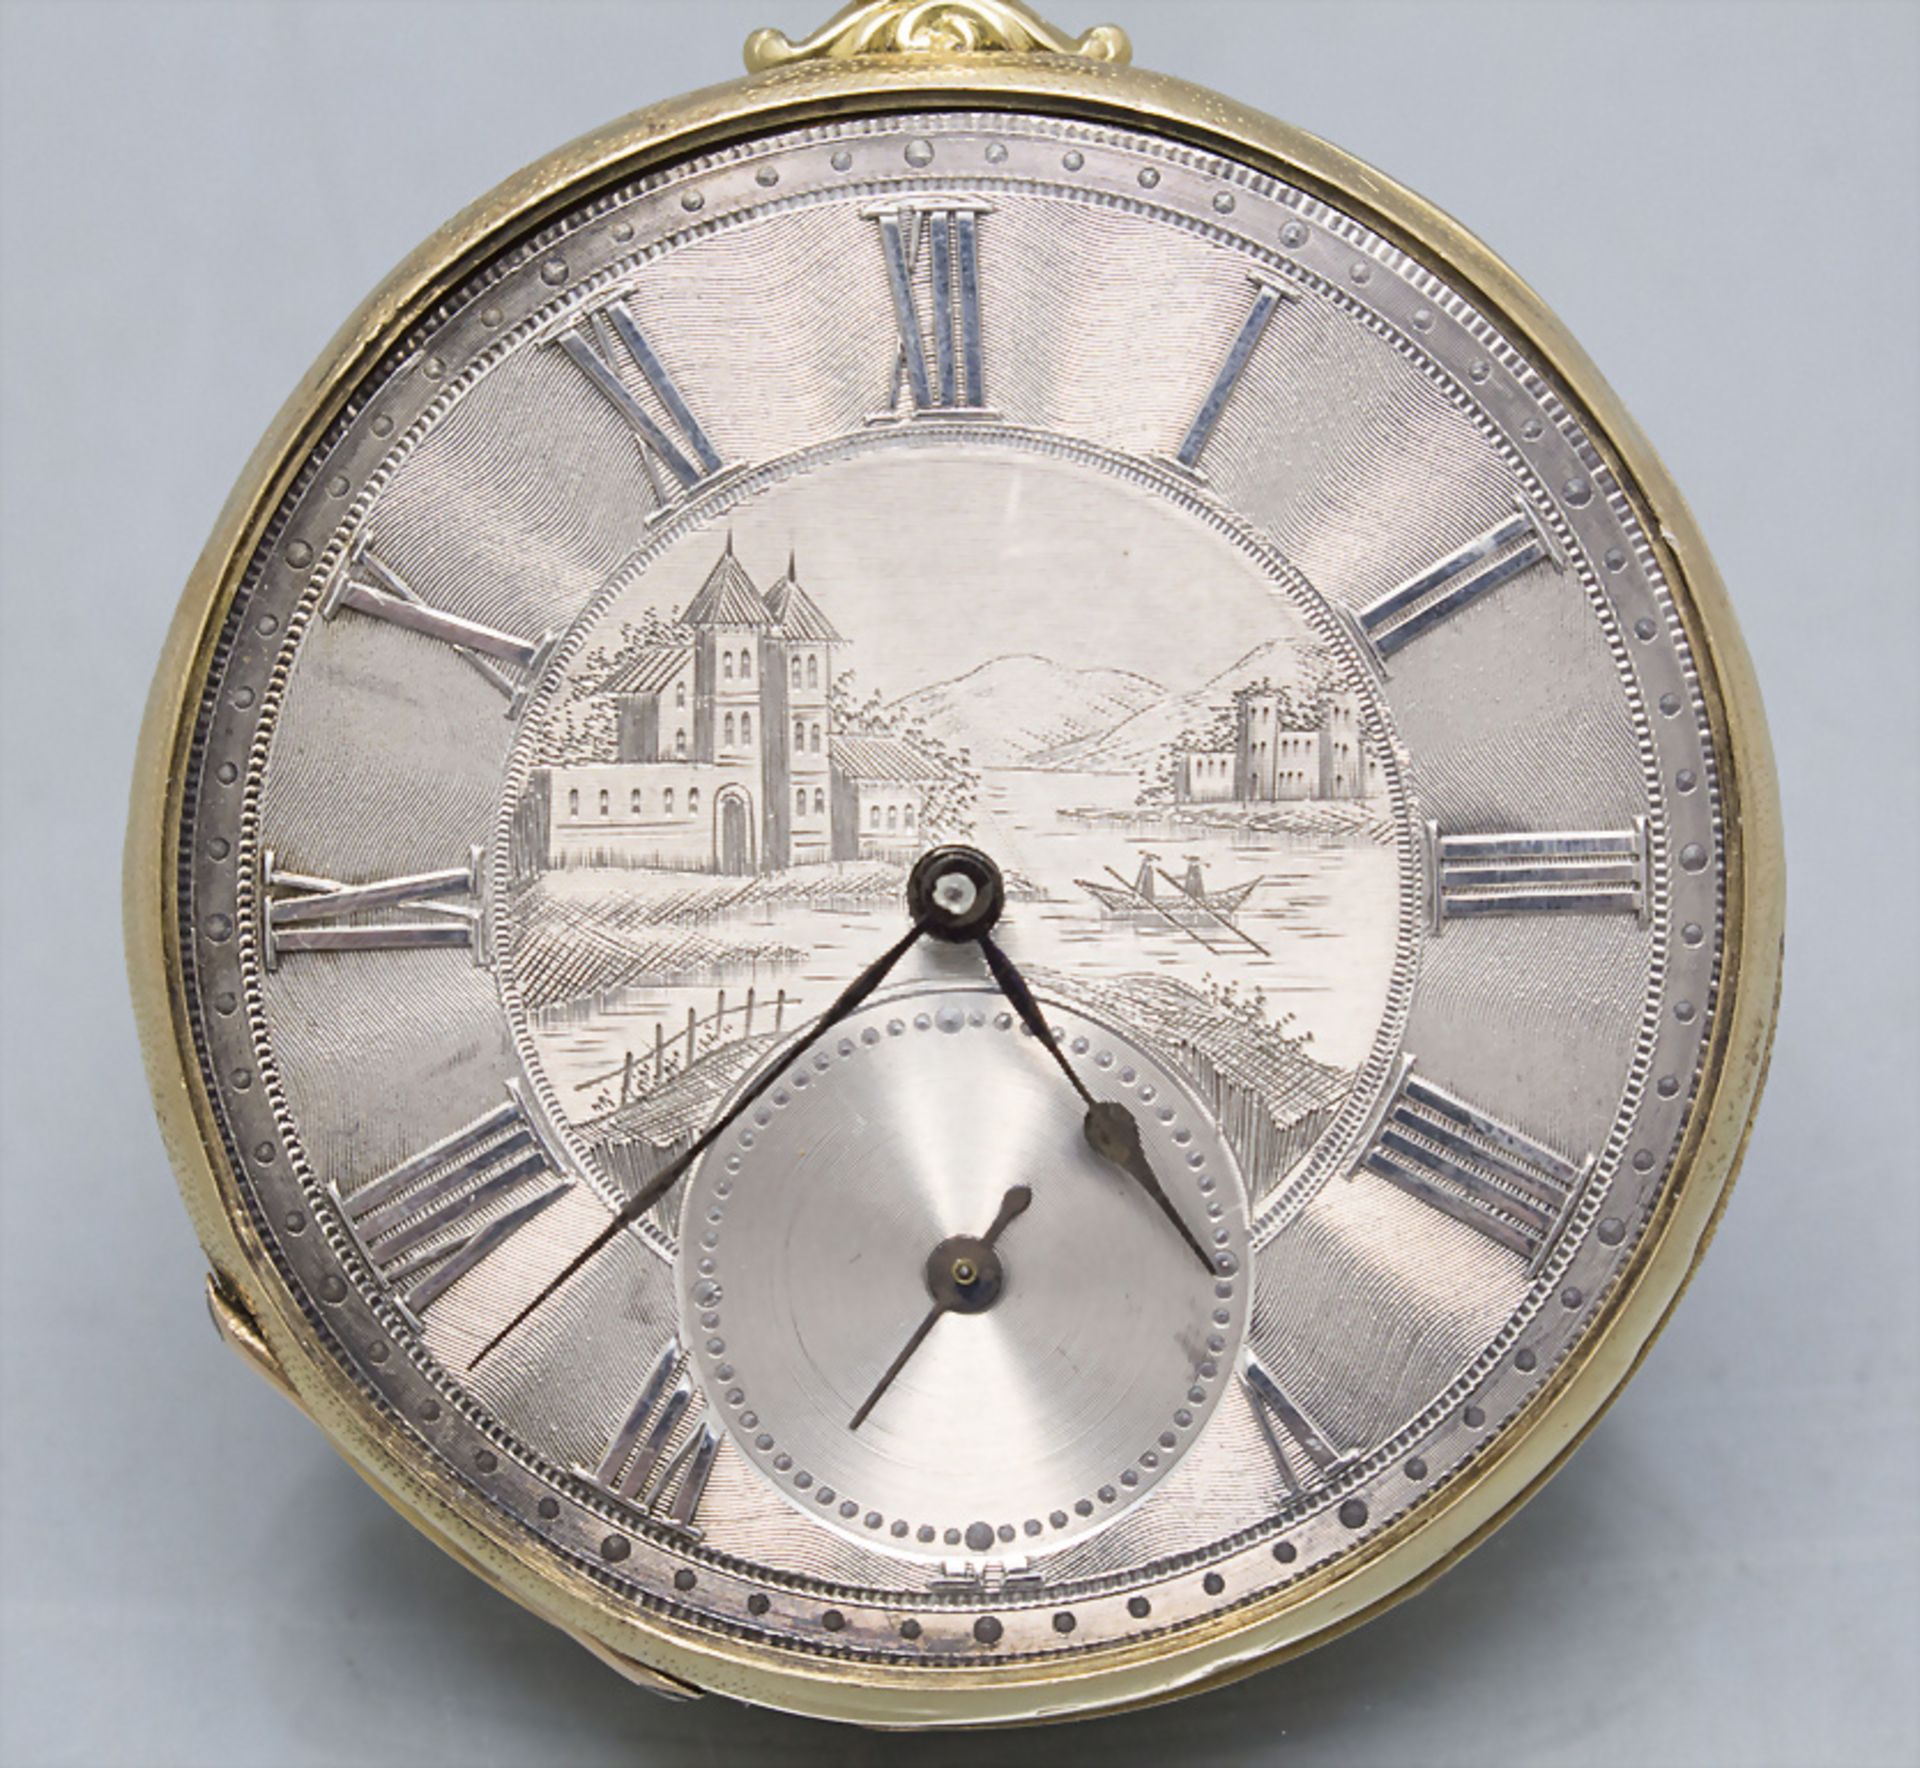 Offene Taschenuhr / An 18 ct gold open face pocket watch, M.J. Tobias, Liverpool, um 1900 - Bild 2 aus 7